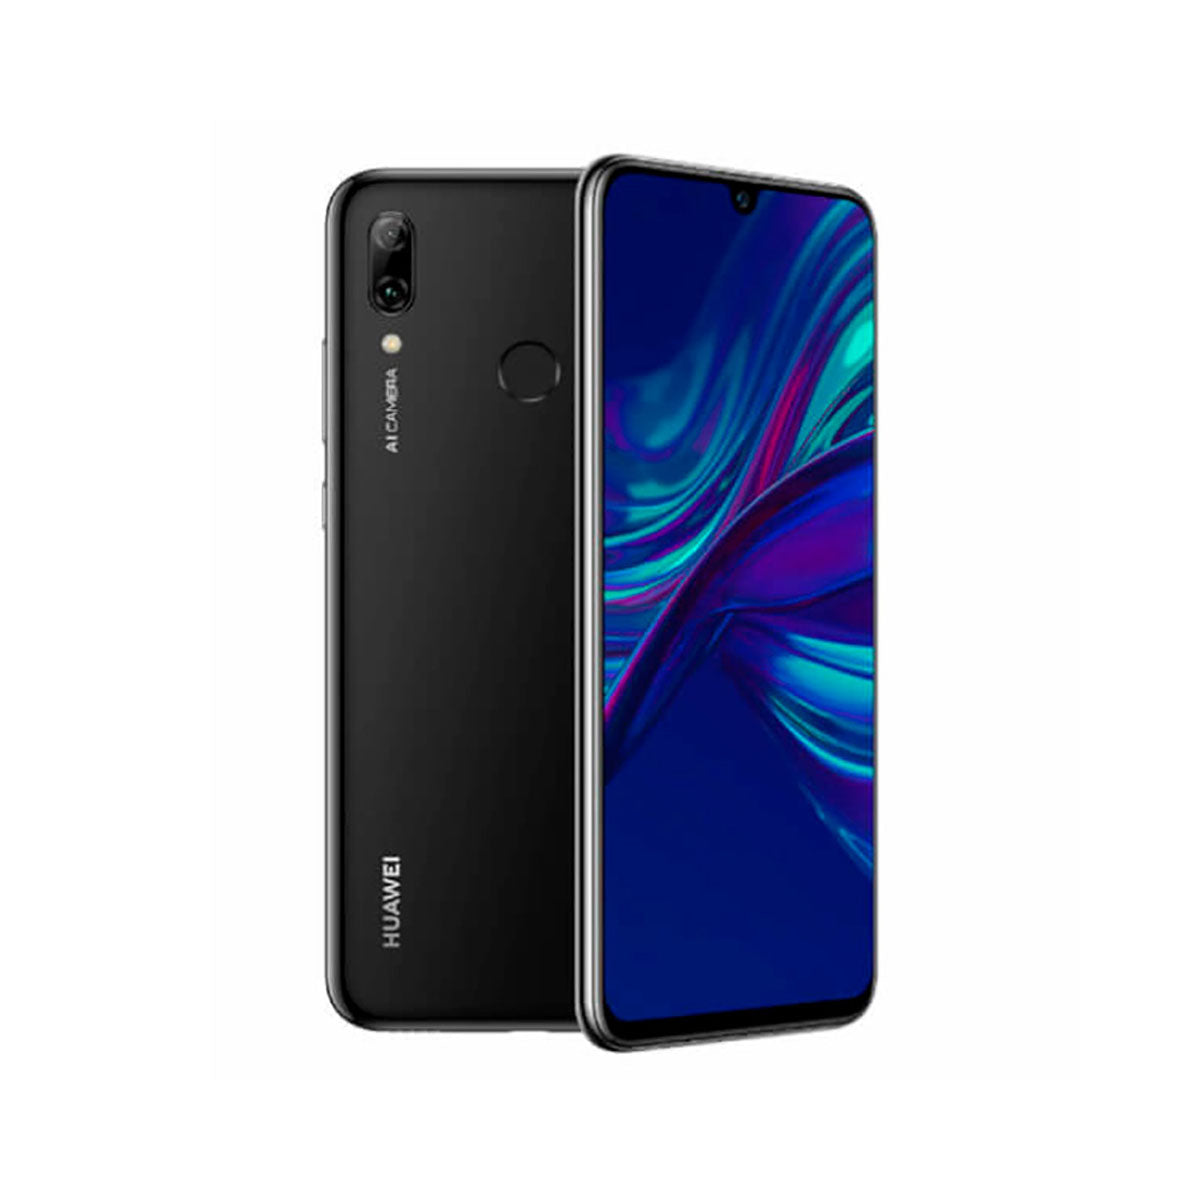 Huawei P Smart (2019) 3GB/64GB Black Single SIM